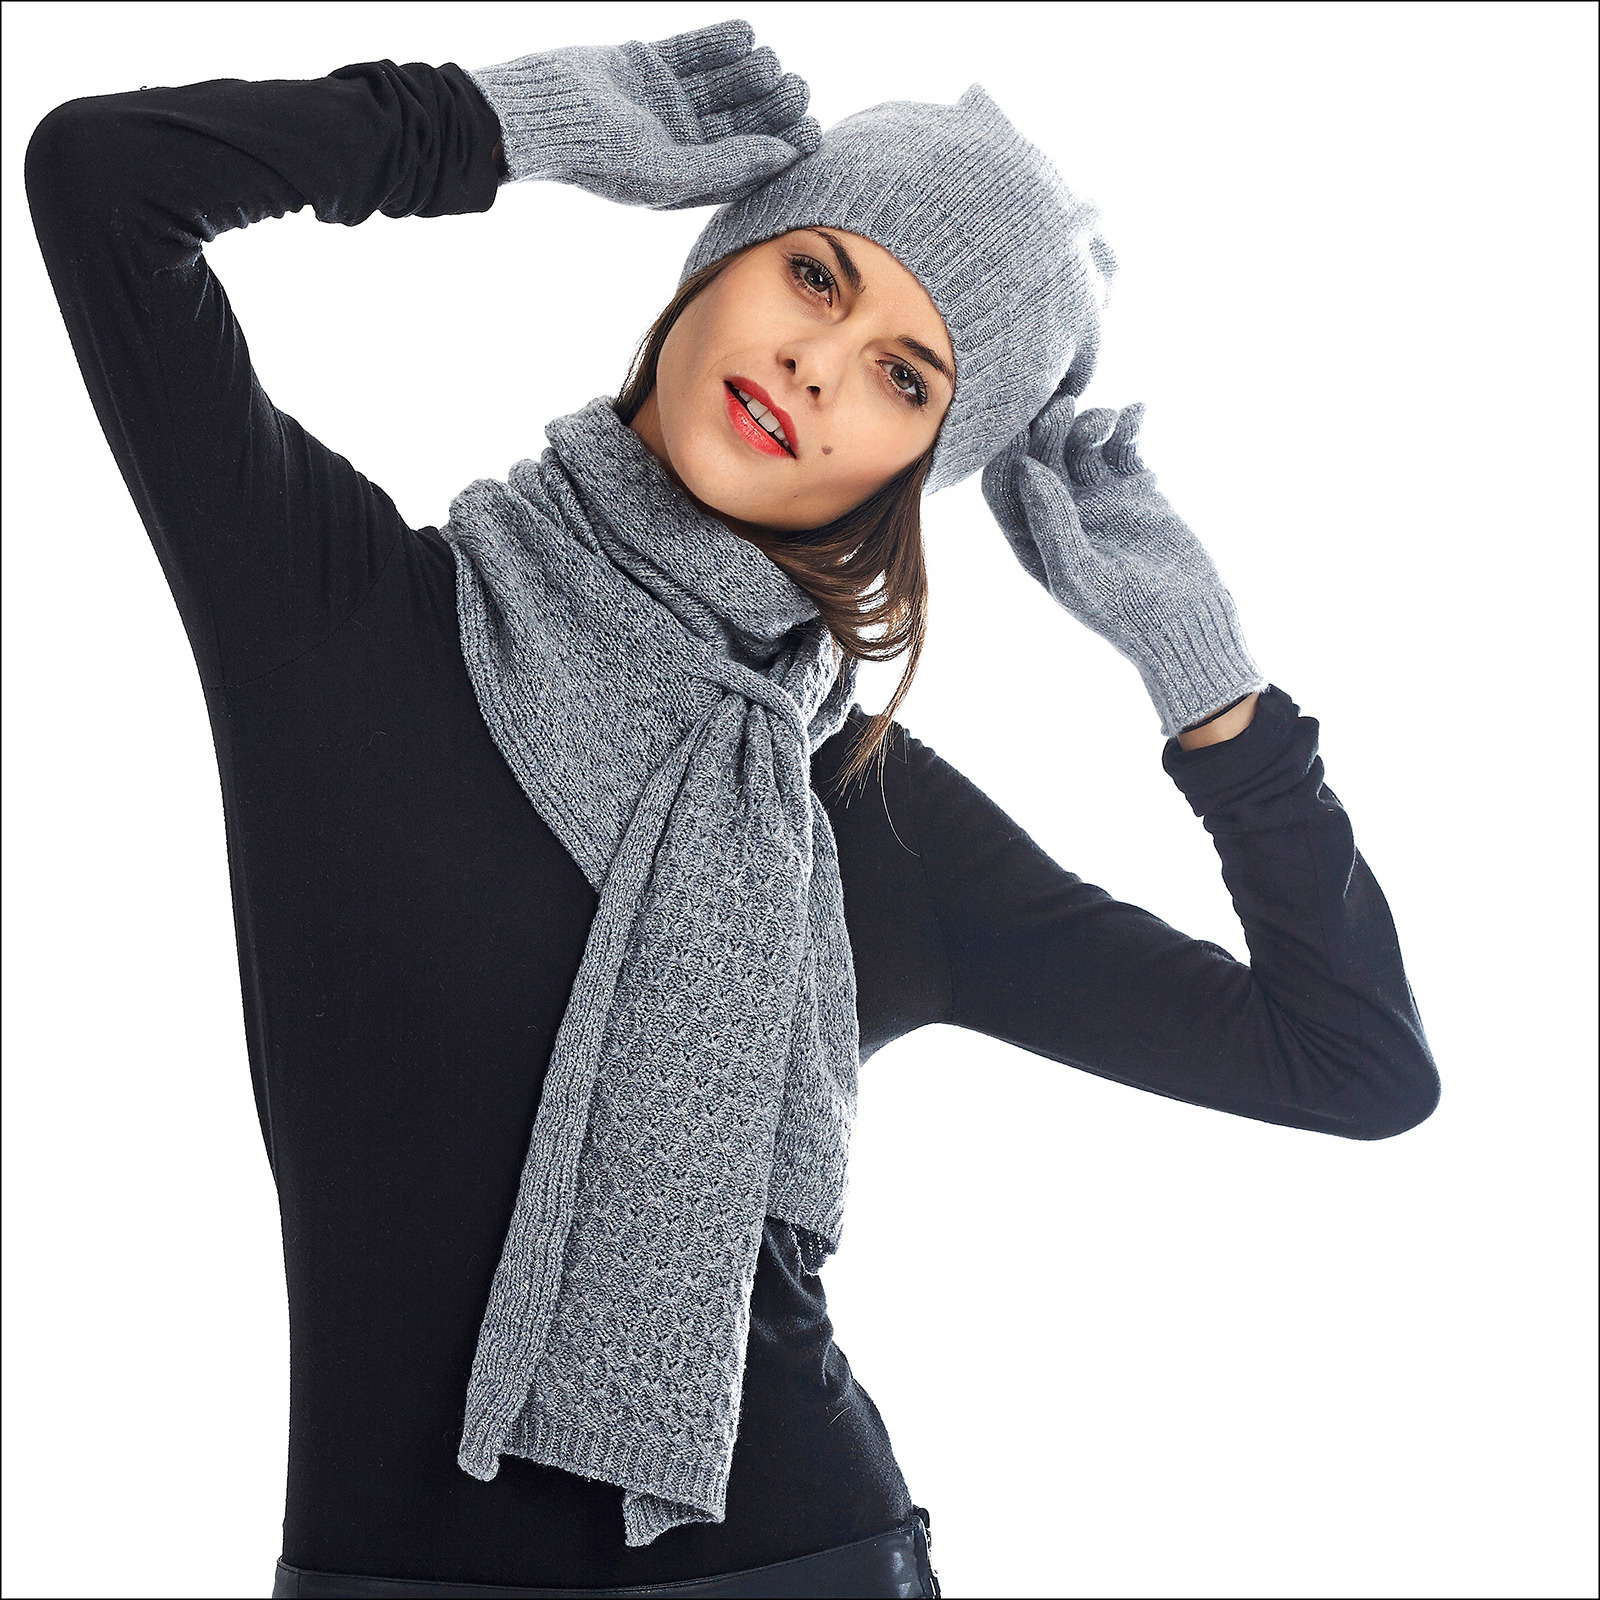 bonnet-echarpe-gants-cachemire-femme - Photo de total LOOK - Les créations  Bergeron & Tricotricot